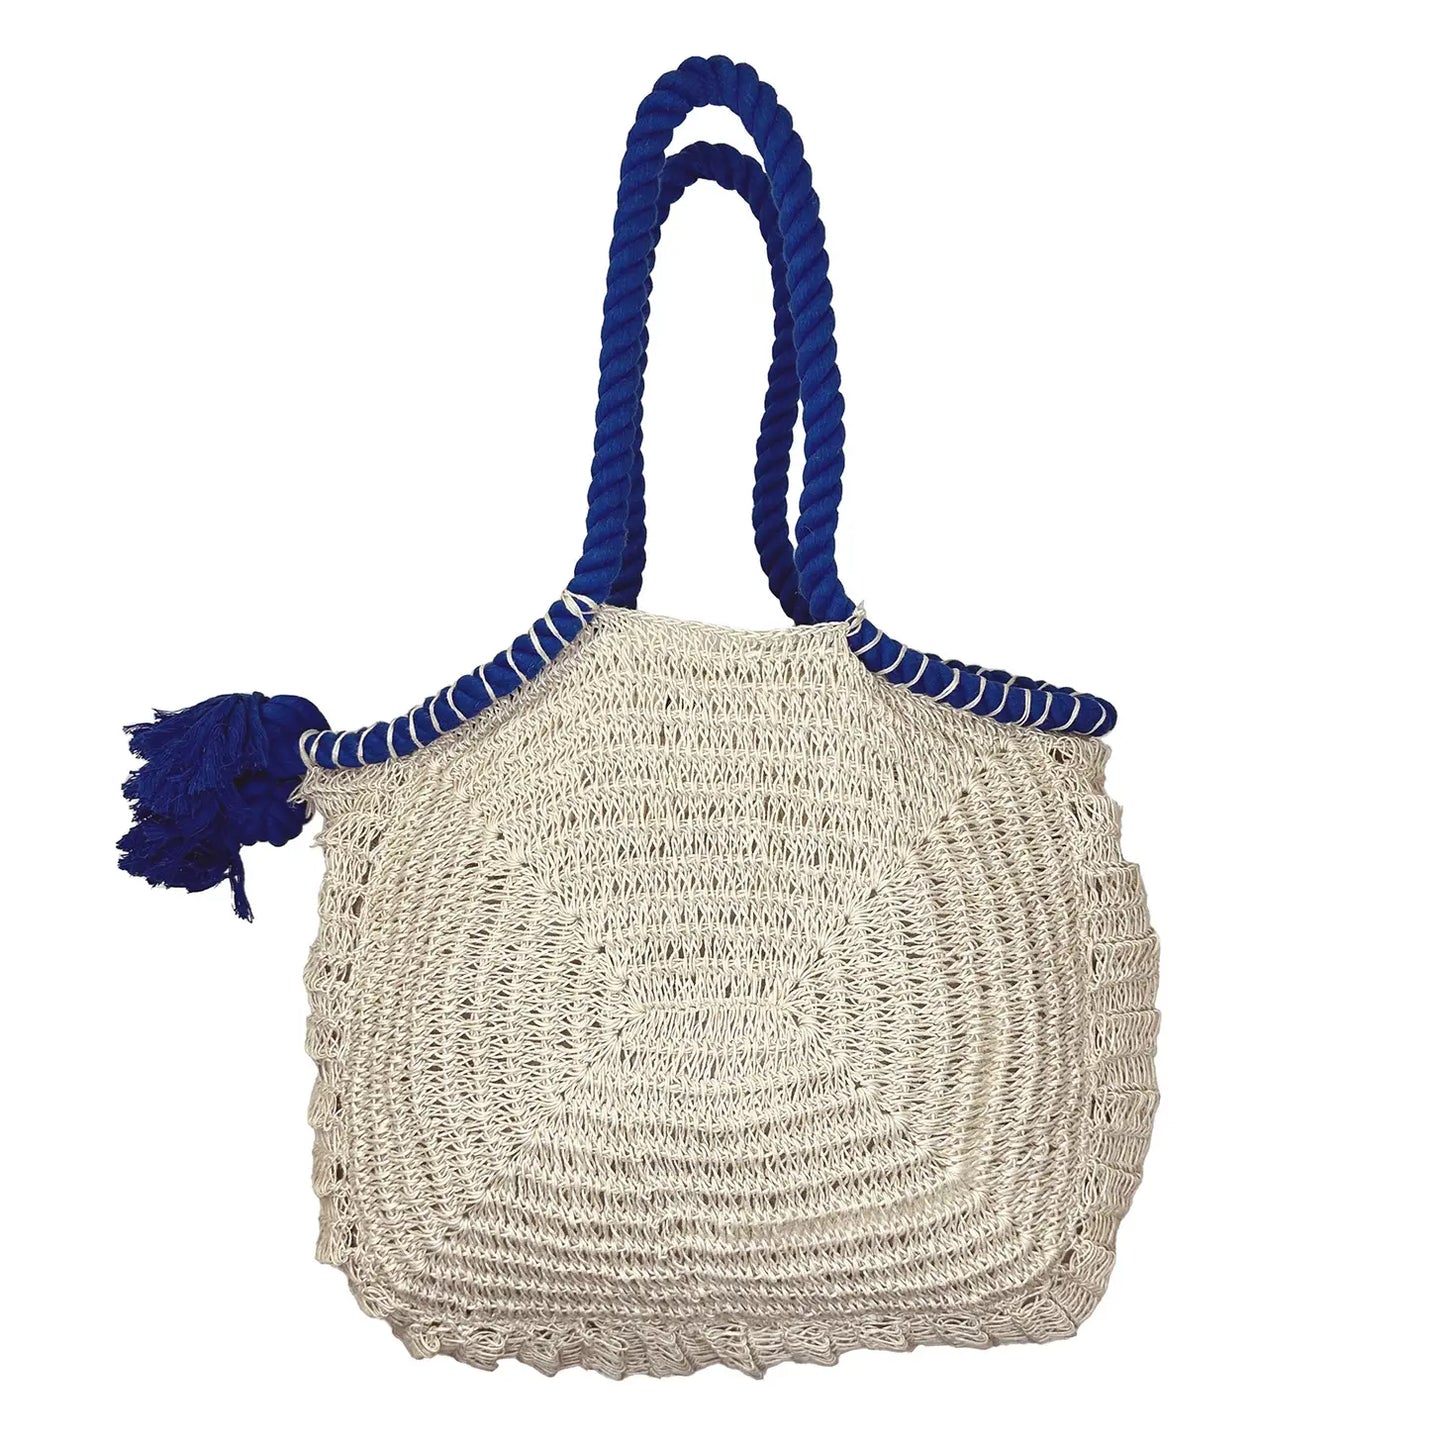 Crochet Rope Bags